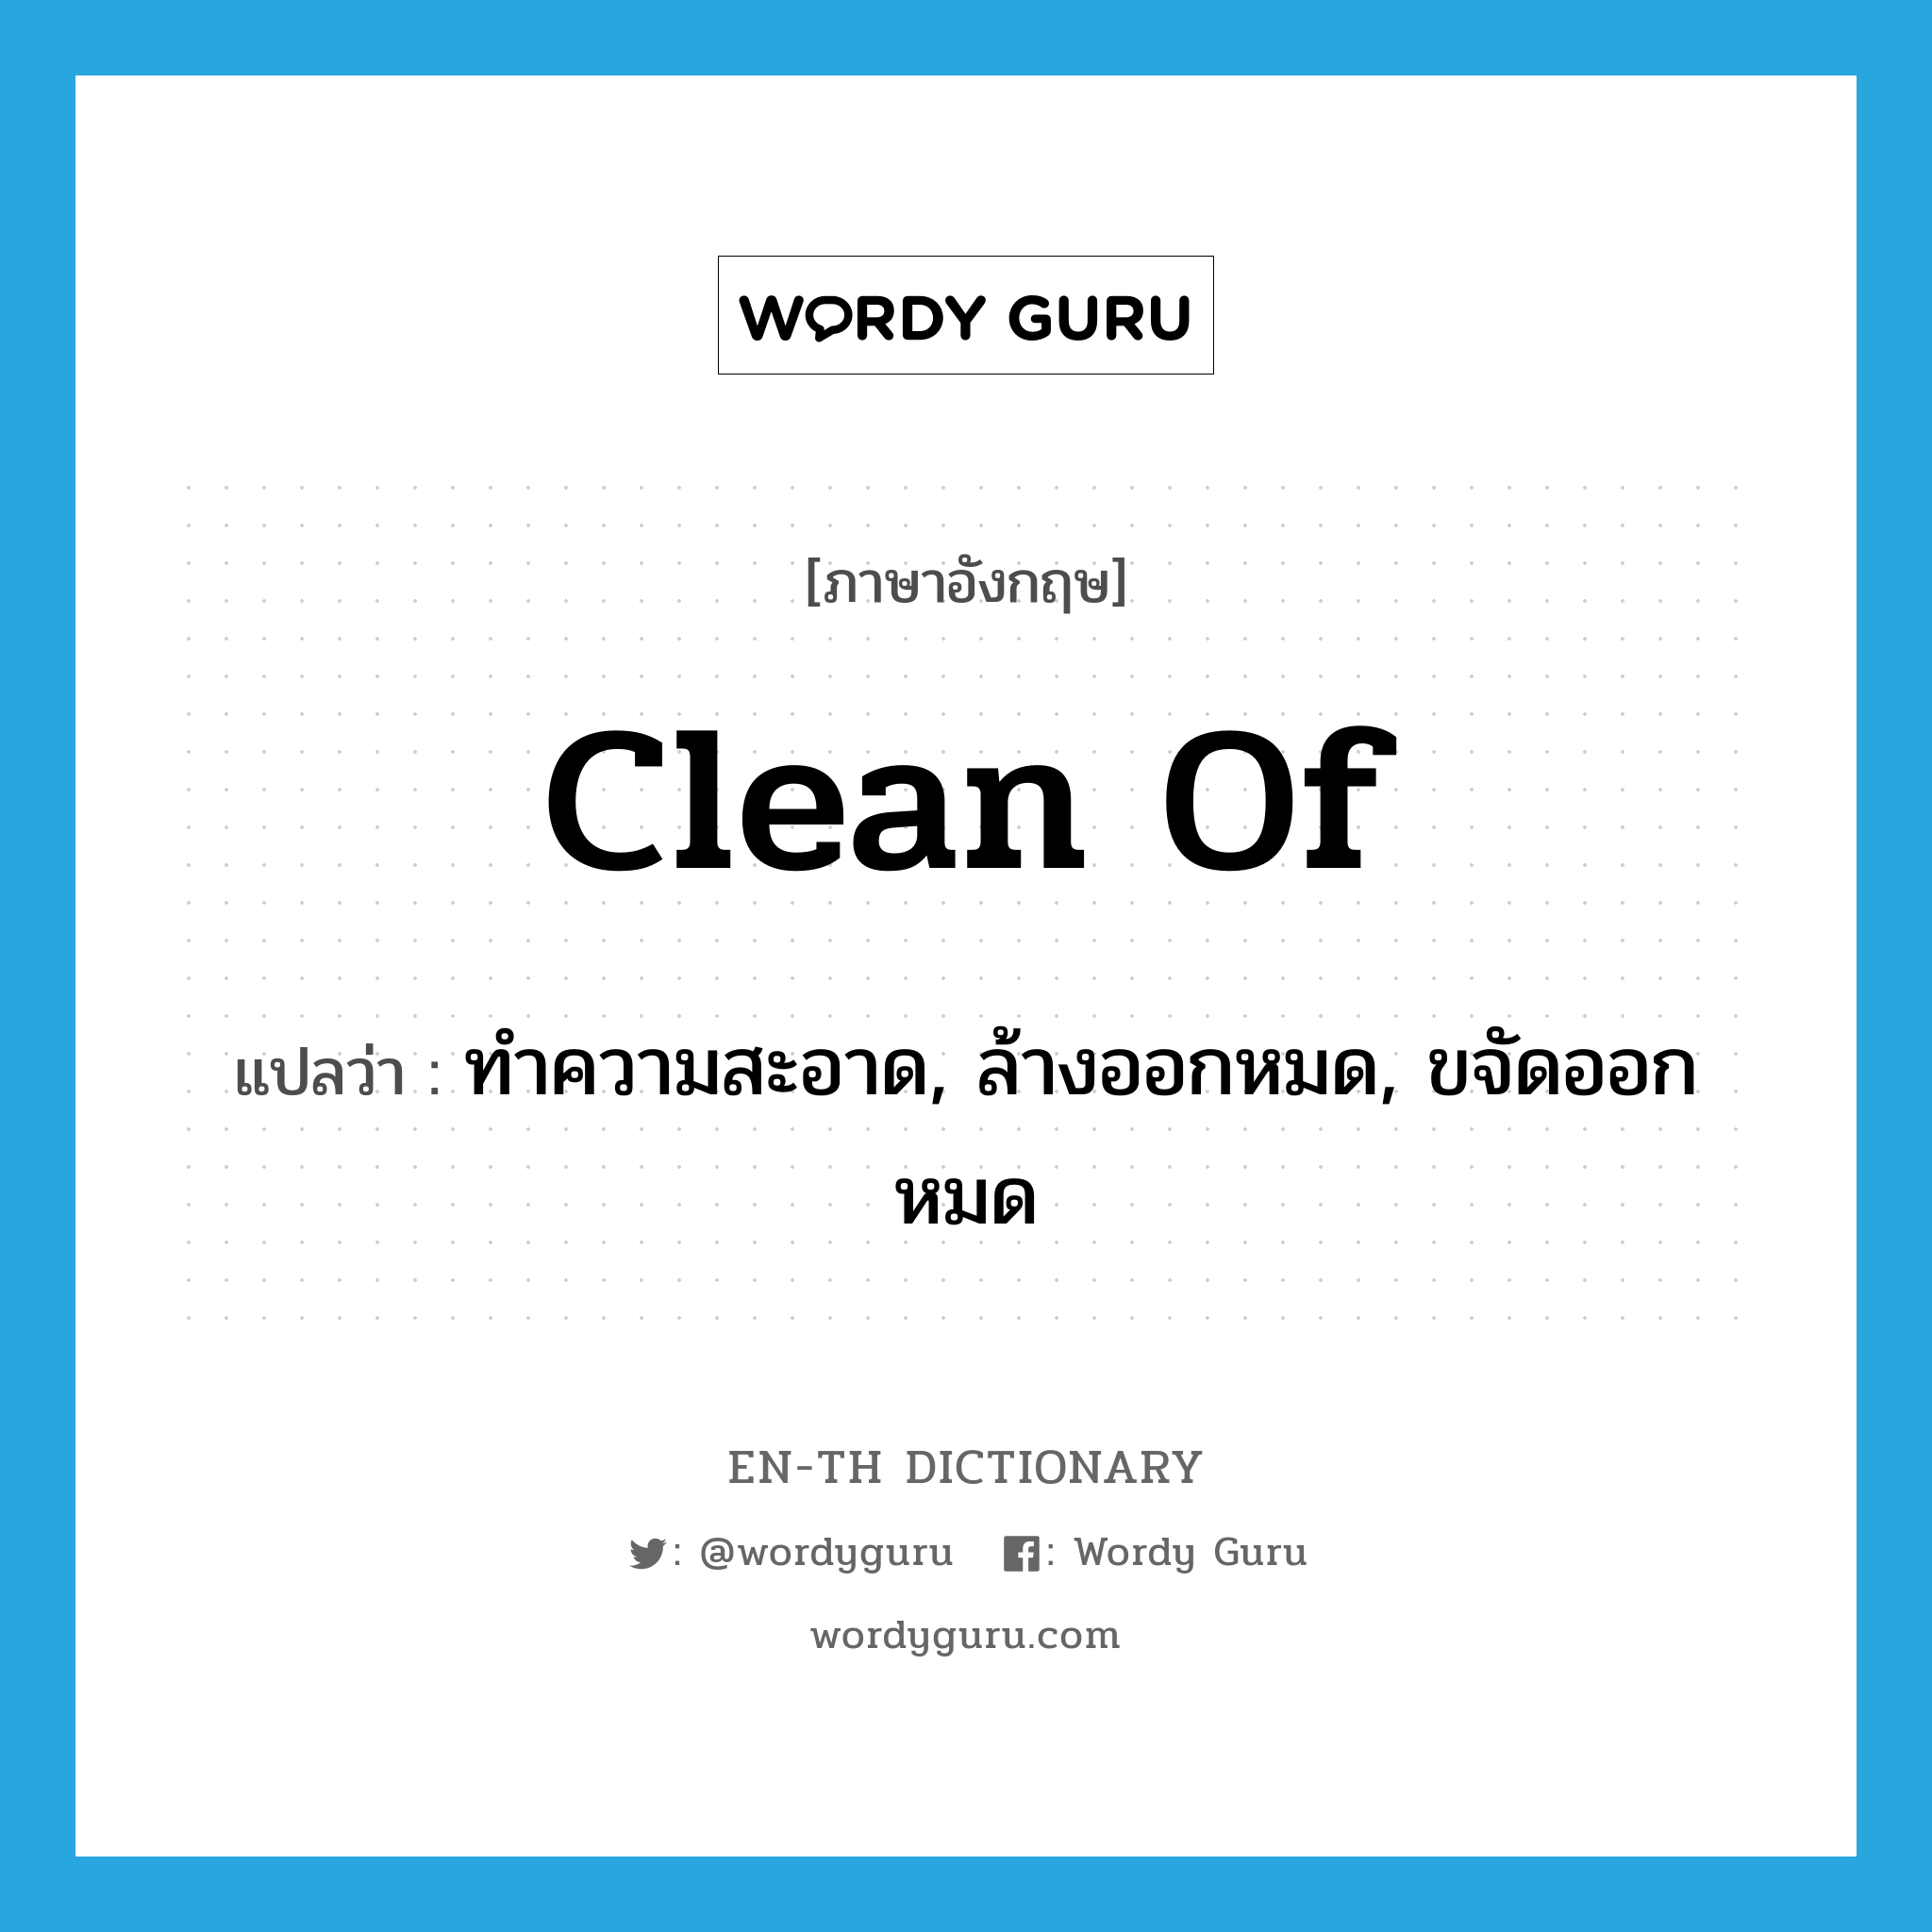 ทำความสะอาด, ล้างออกหมด, ขจัดออกหมด ภาษาอังกฤษ?, คำศัพท์ภาษาอังกฤษ ทำความสะอาด, ล้างออกหมด, ขจัดออกหมด แปลว่า clean of ประเภท PHRV หมวด PHRV